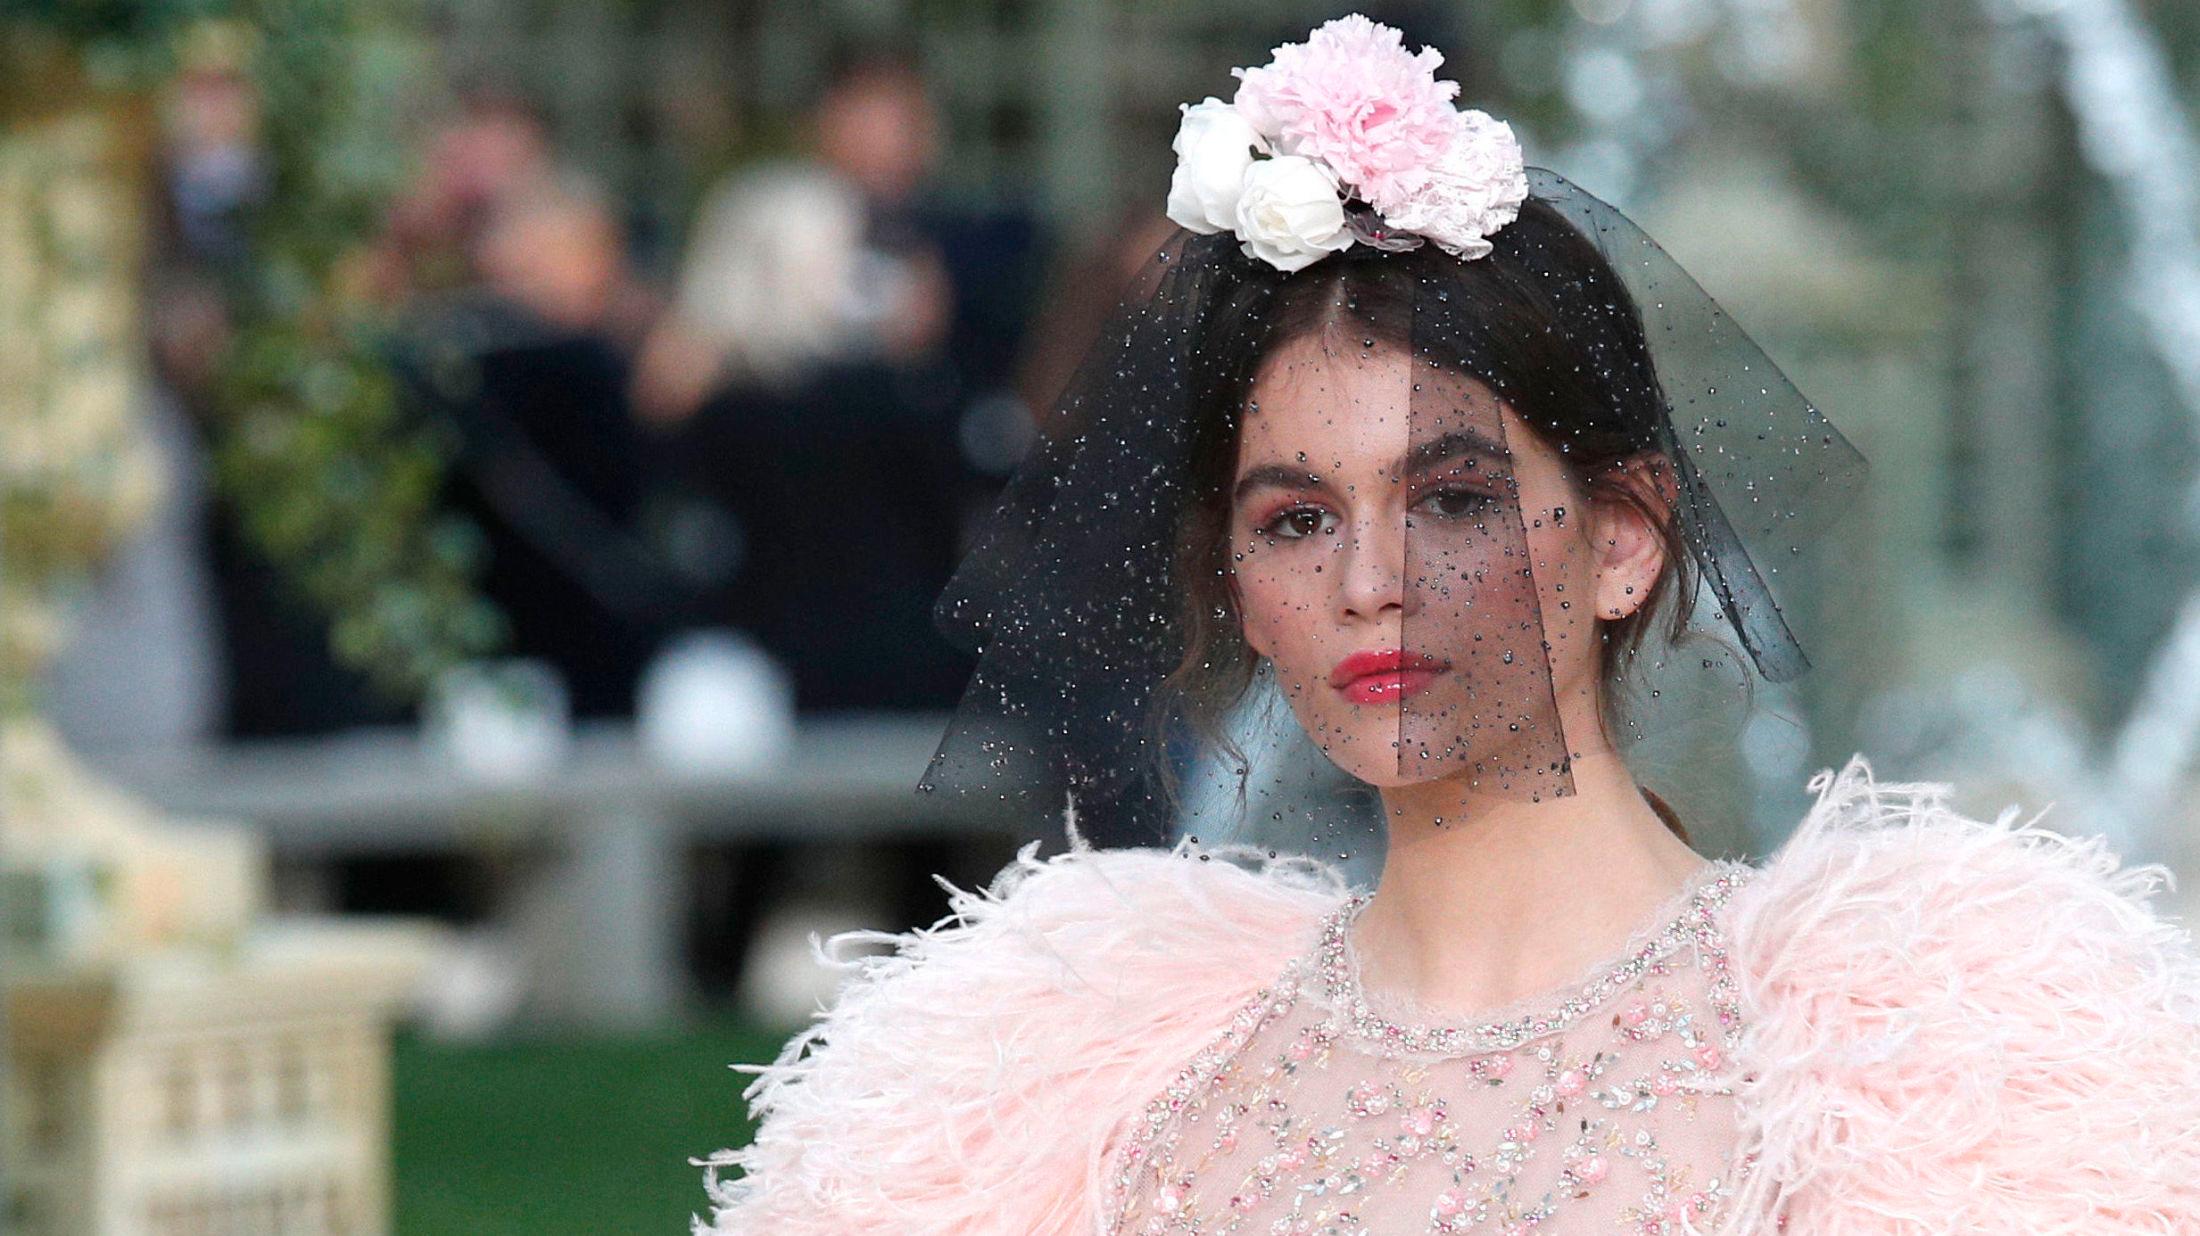 STORT OPPDRAG: Her er supermodell Kaia Gerber på catwalken for Chanel. Foto: AP